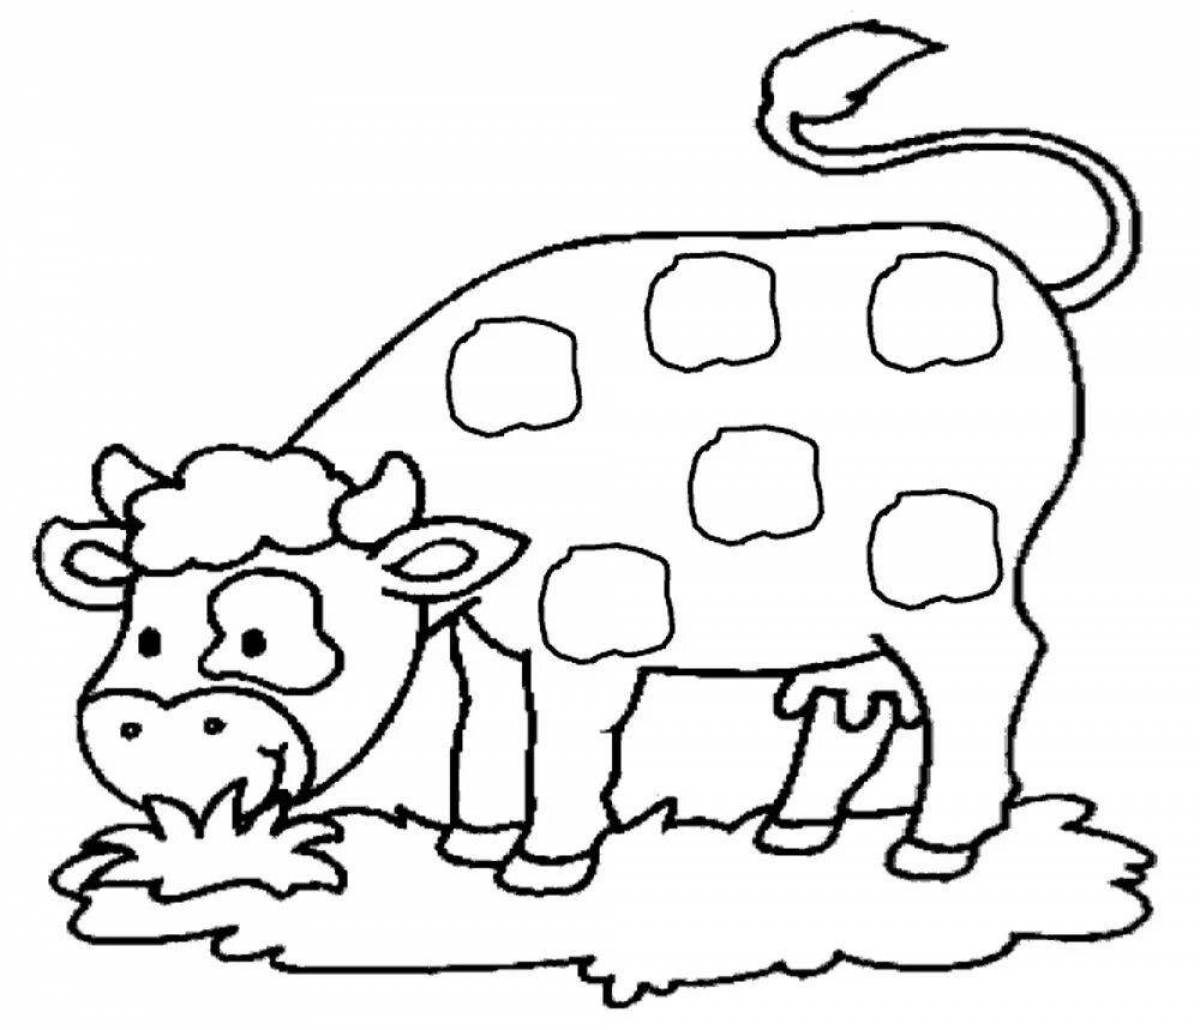 Веселая раскраска корова для детей